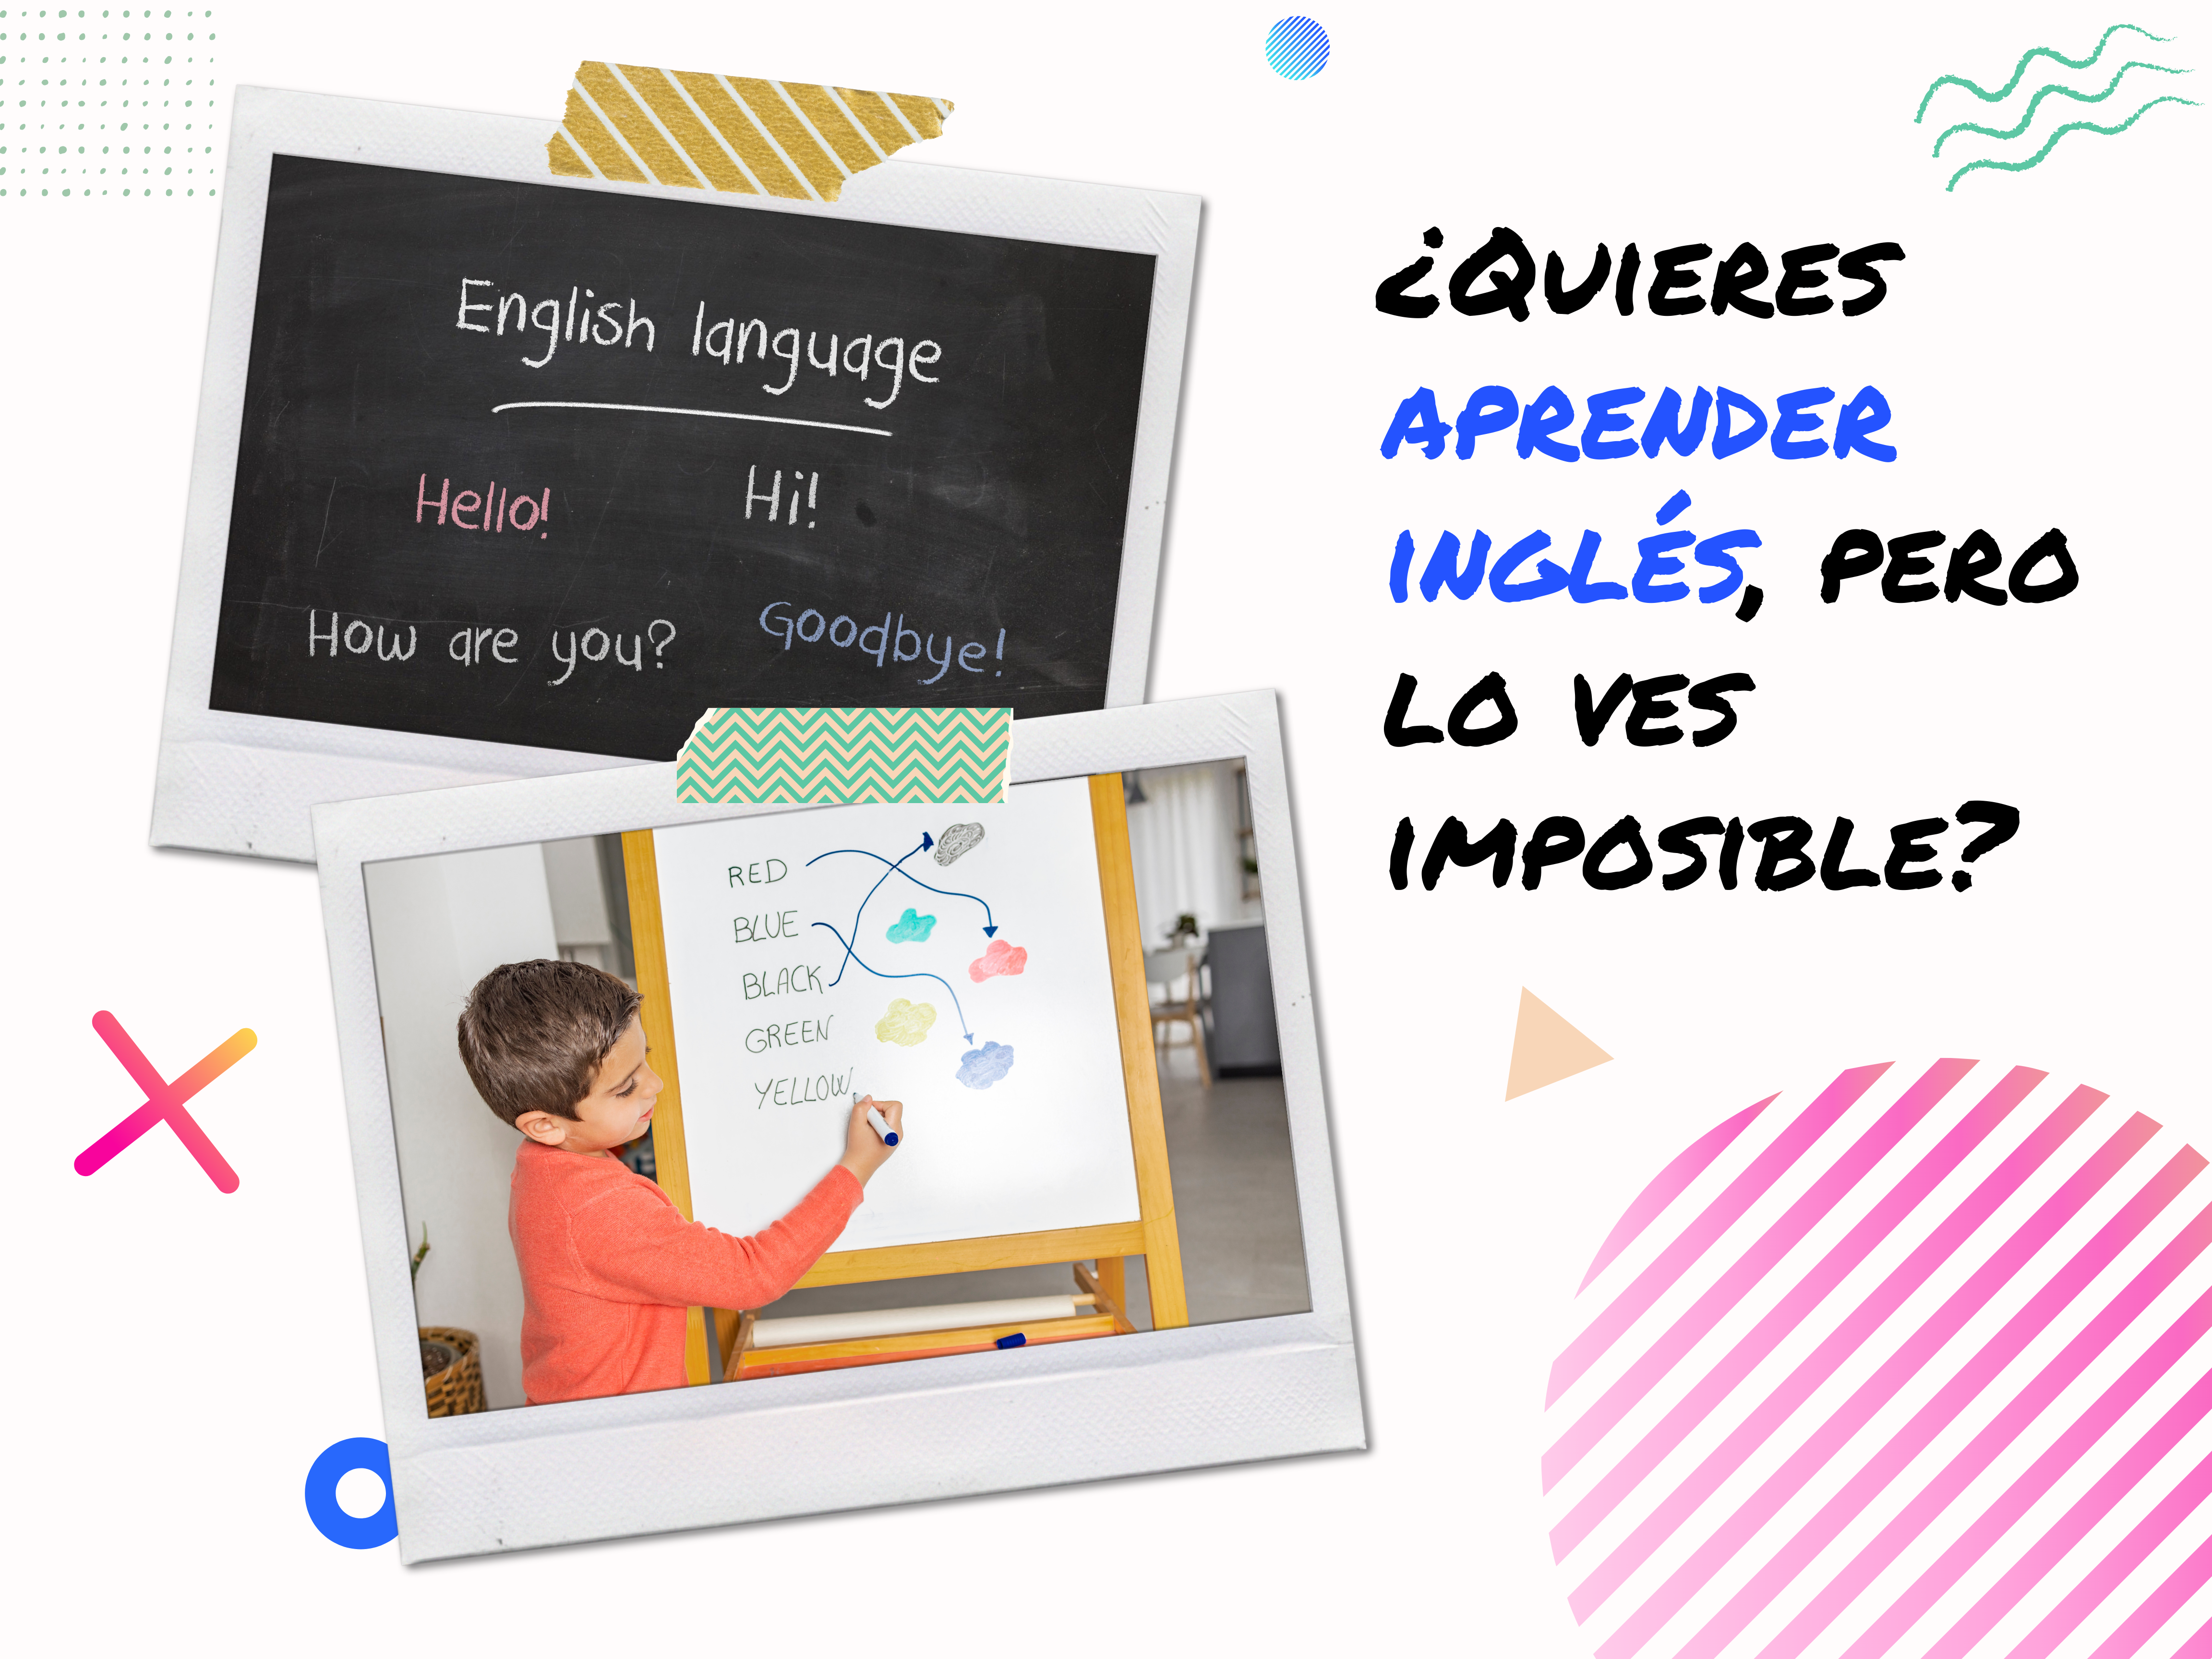 ¿Quieres aprender inglés, pero lo ves imposible?